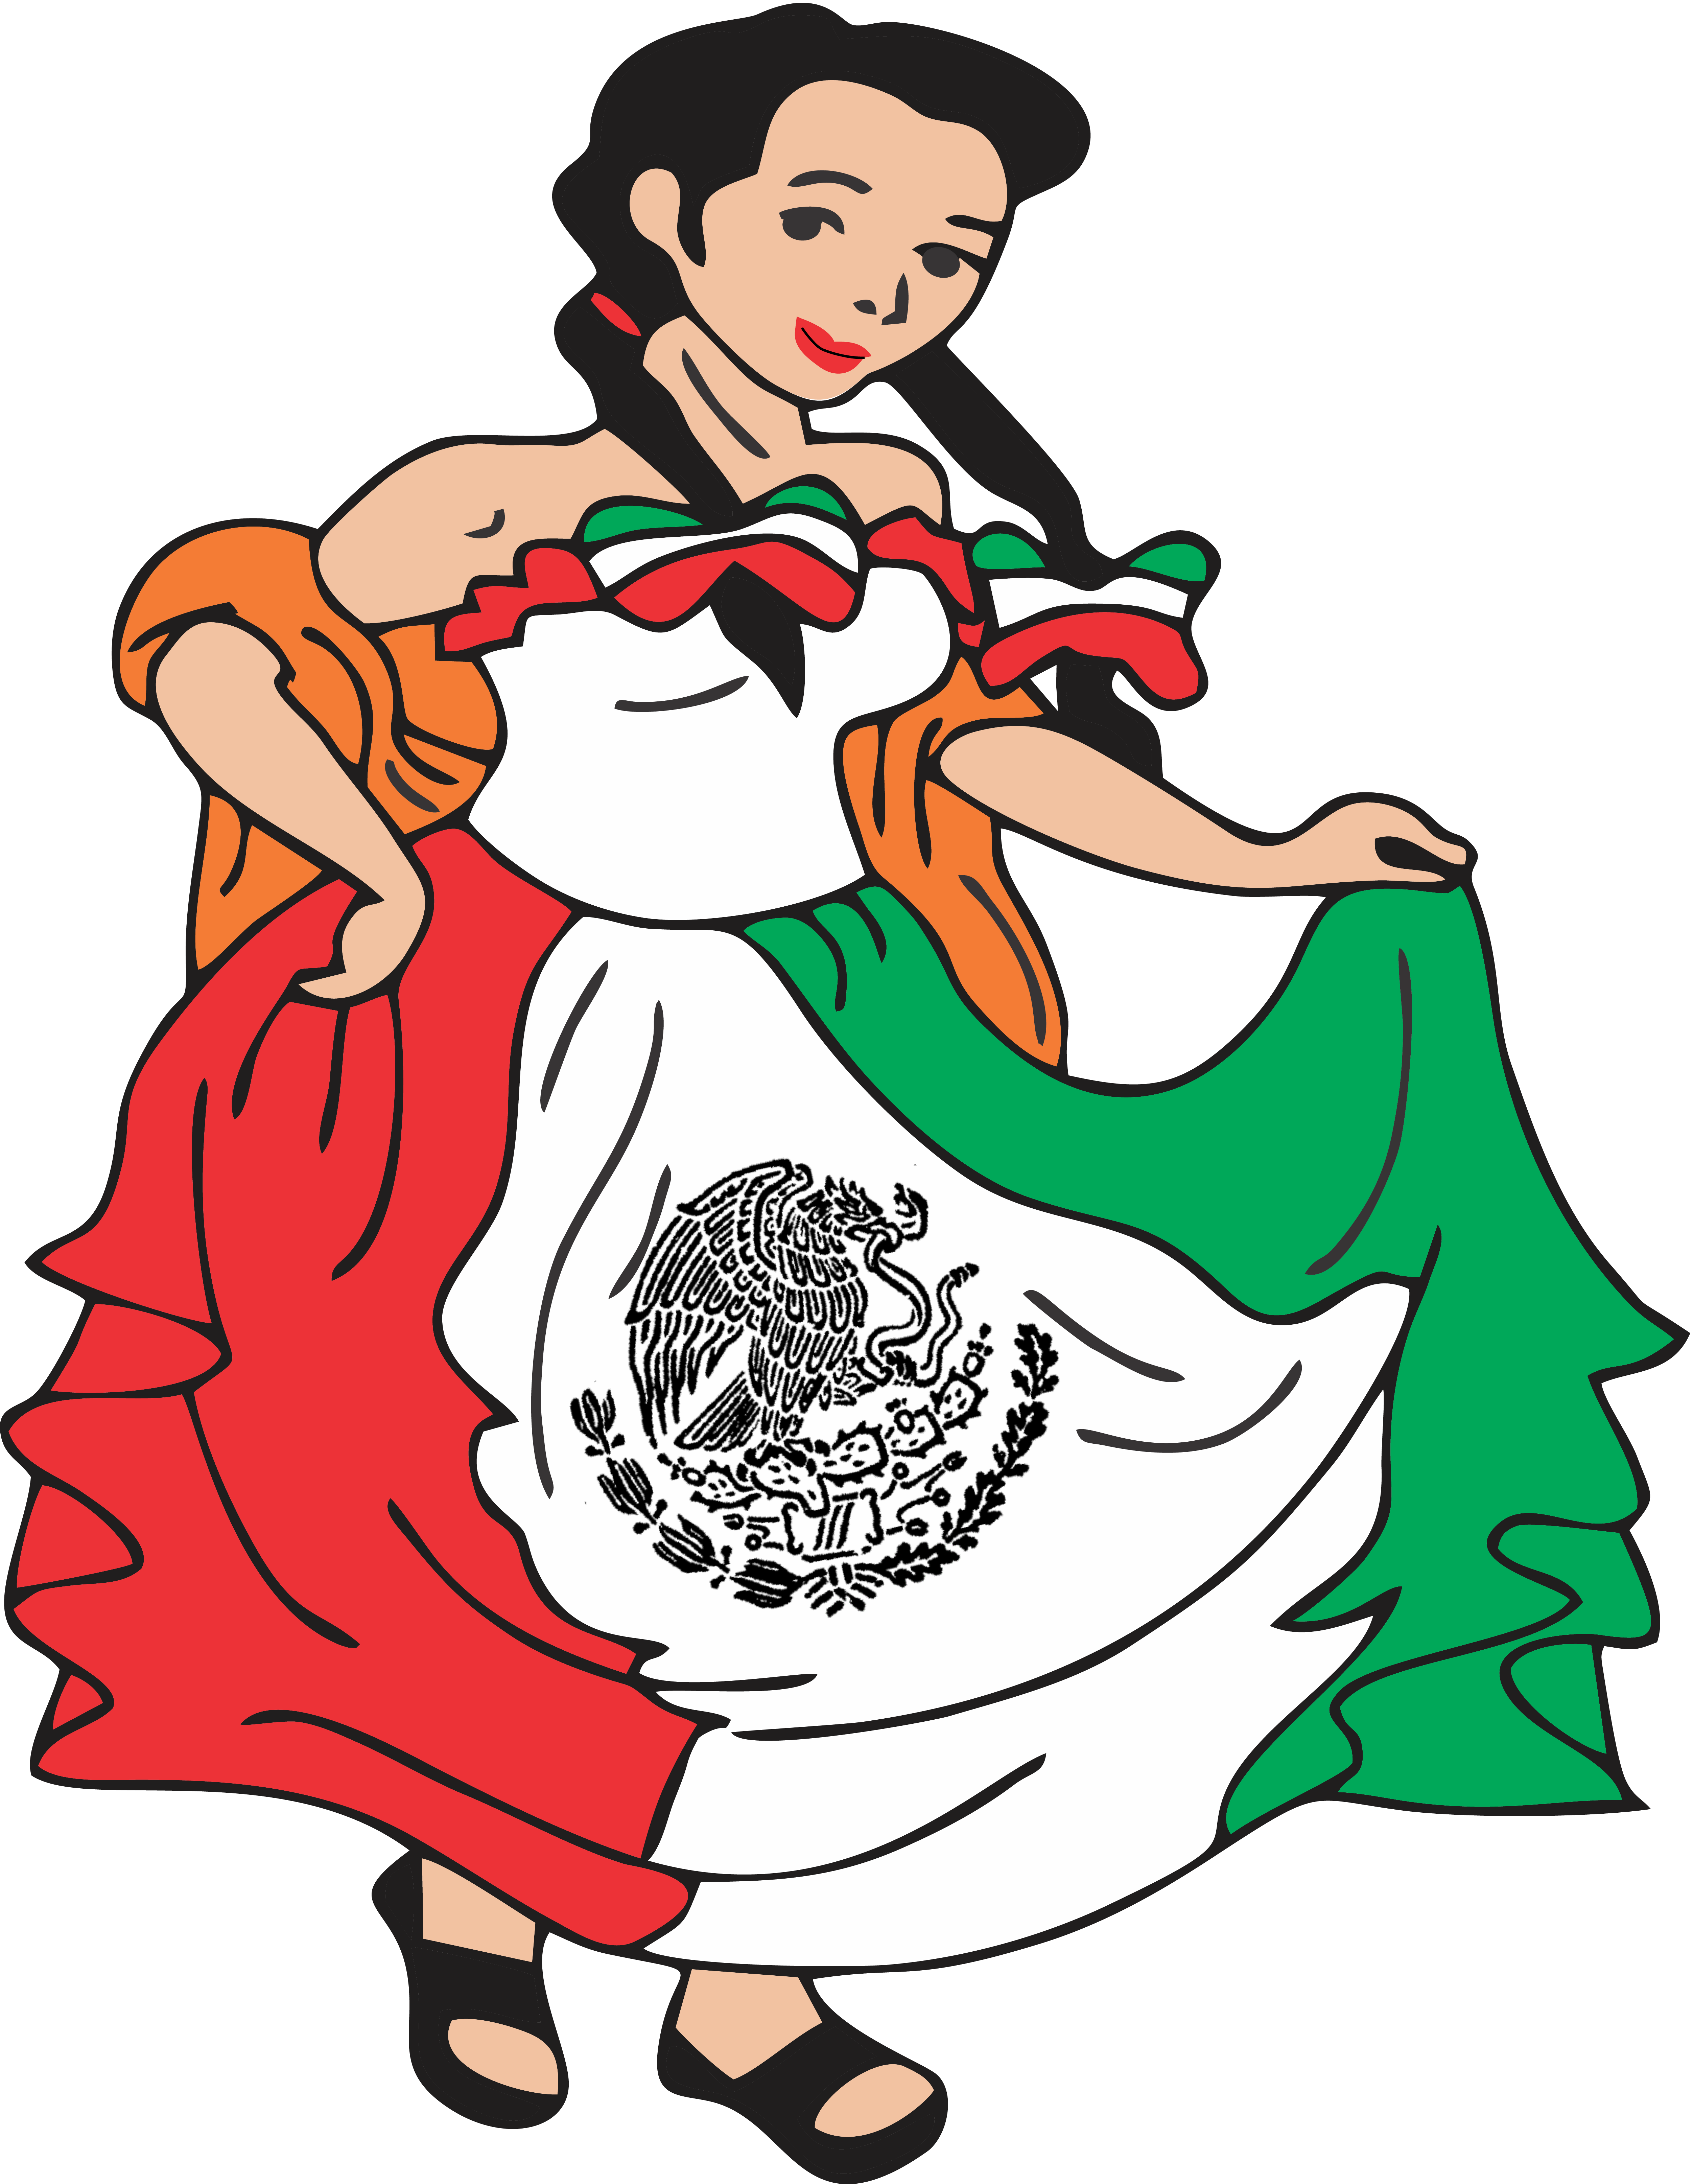 Taqueria La Coqueta logo